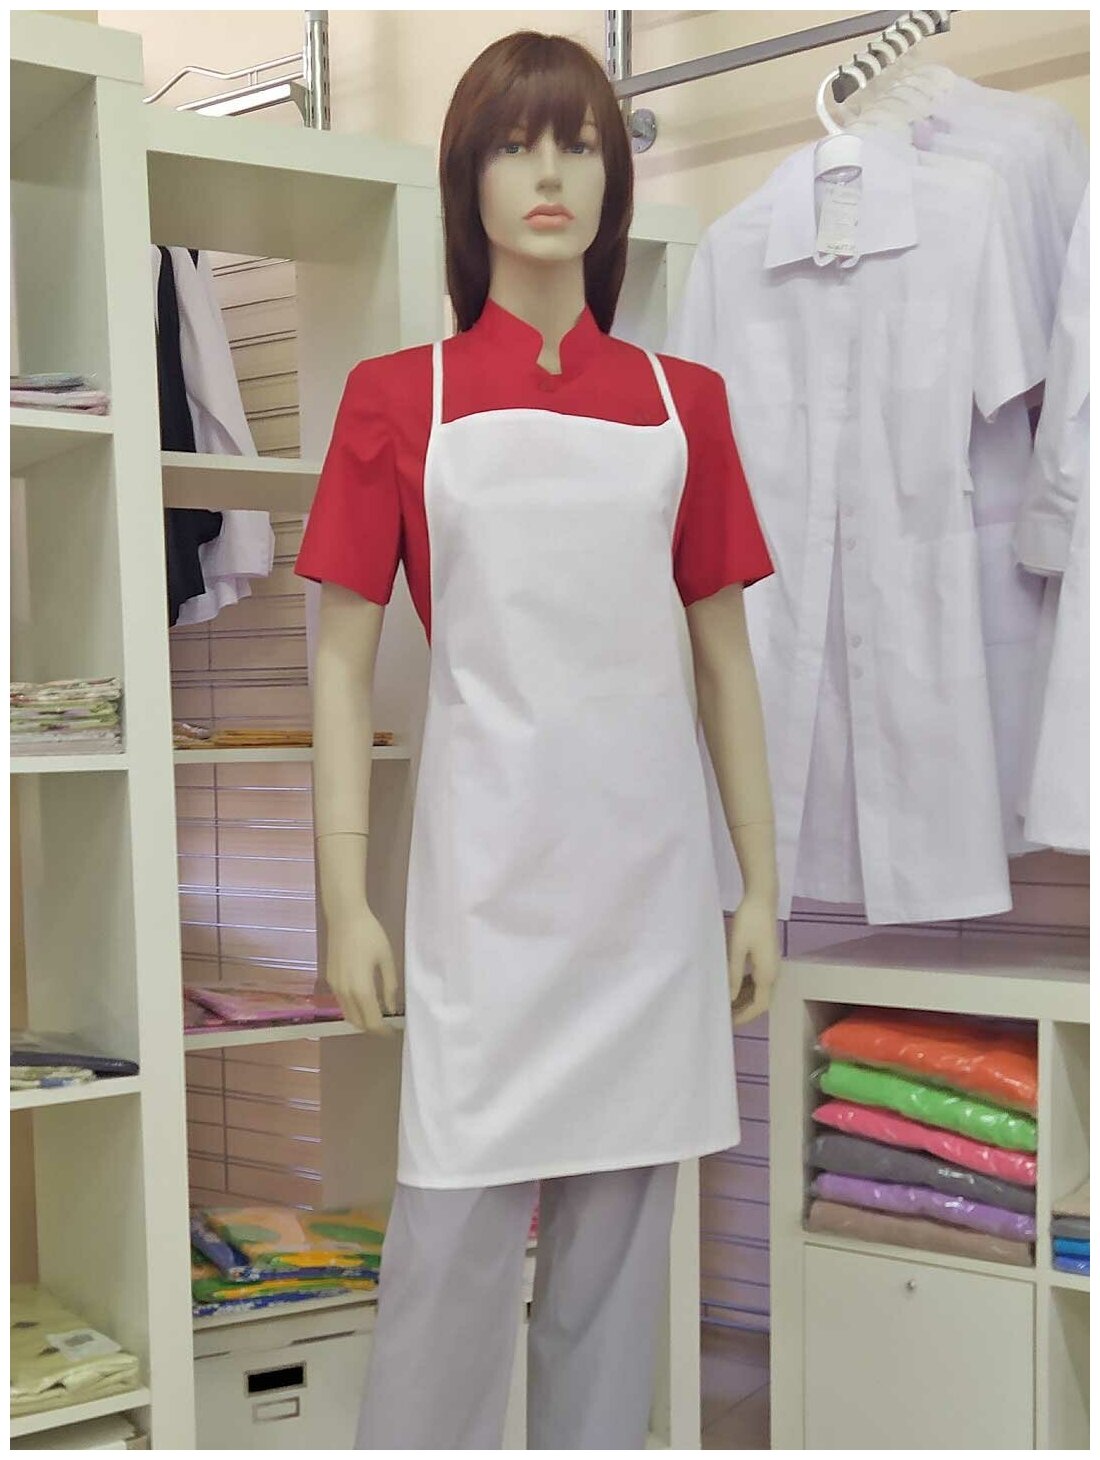 Фартук, производитель Фабрика швейных изделий №3, модель М-301, ткань бязь отбеленная, цвет белый